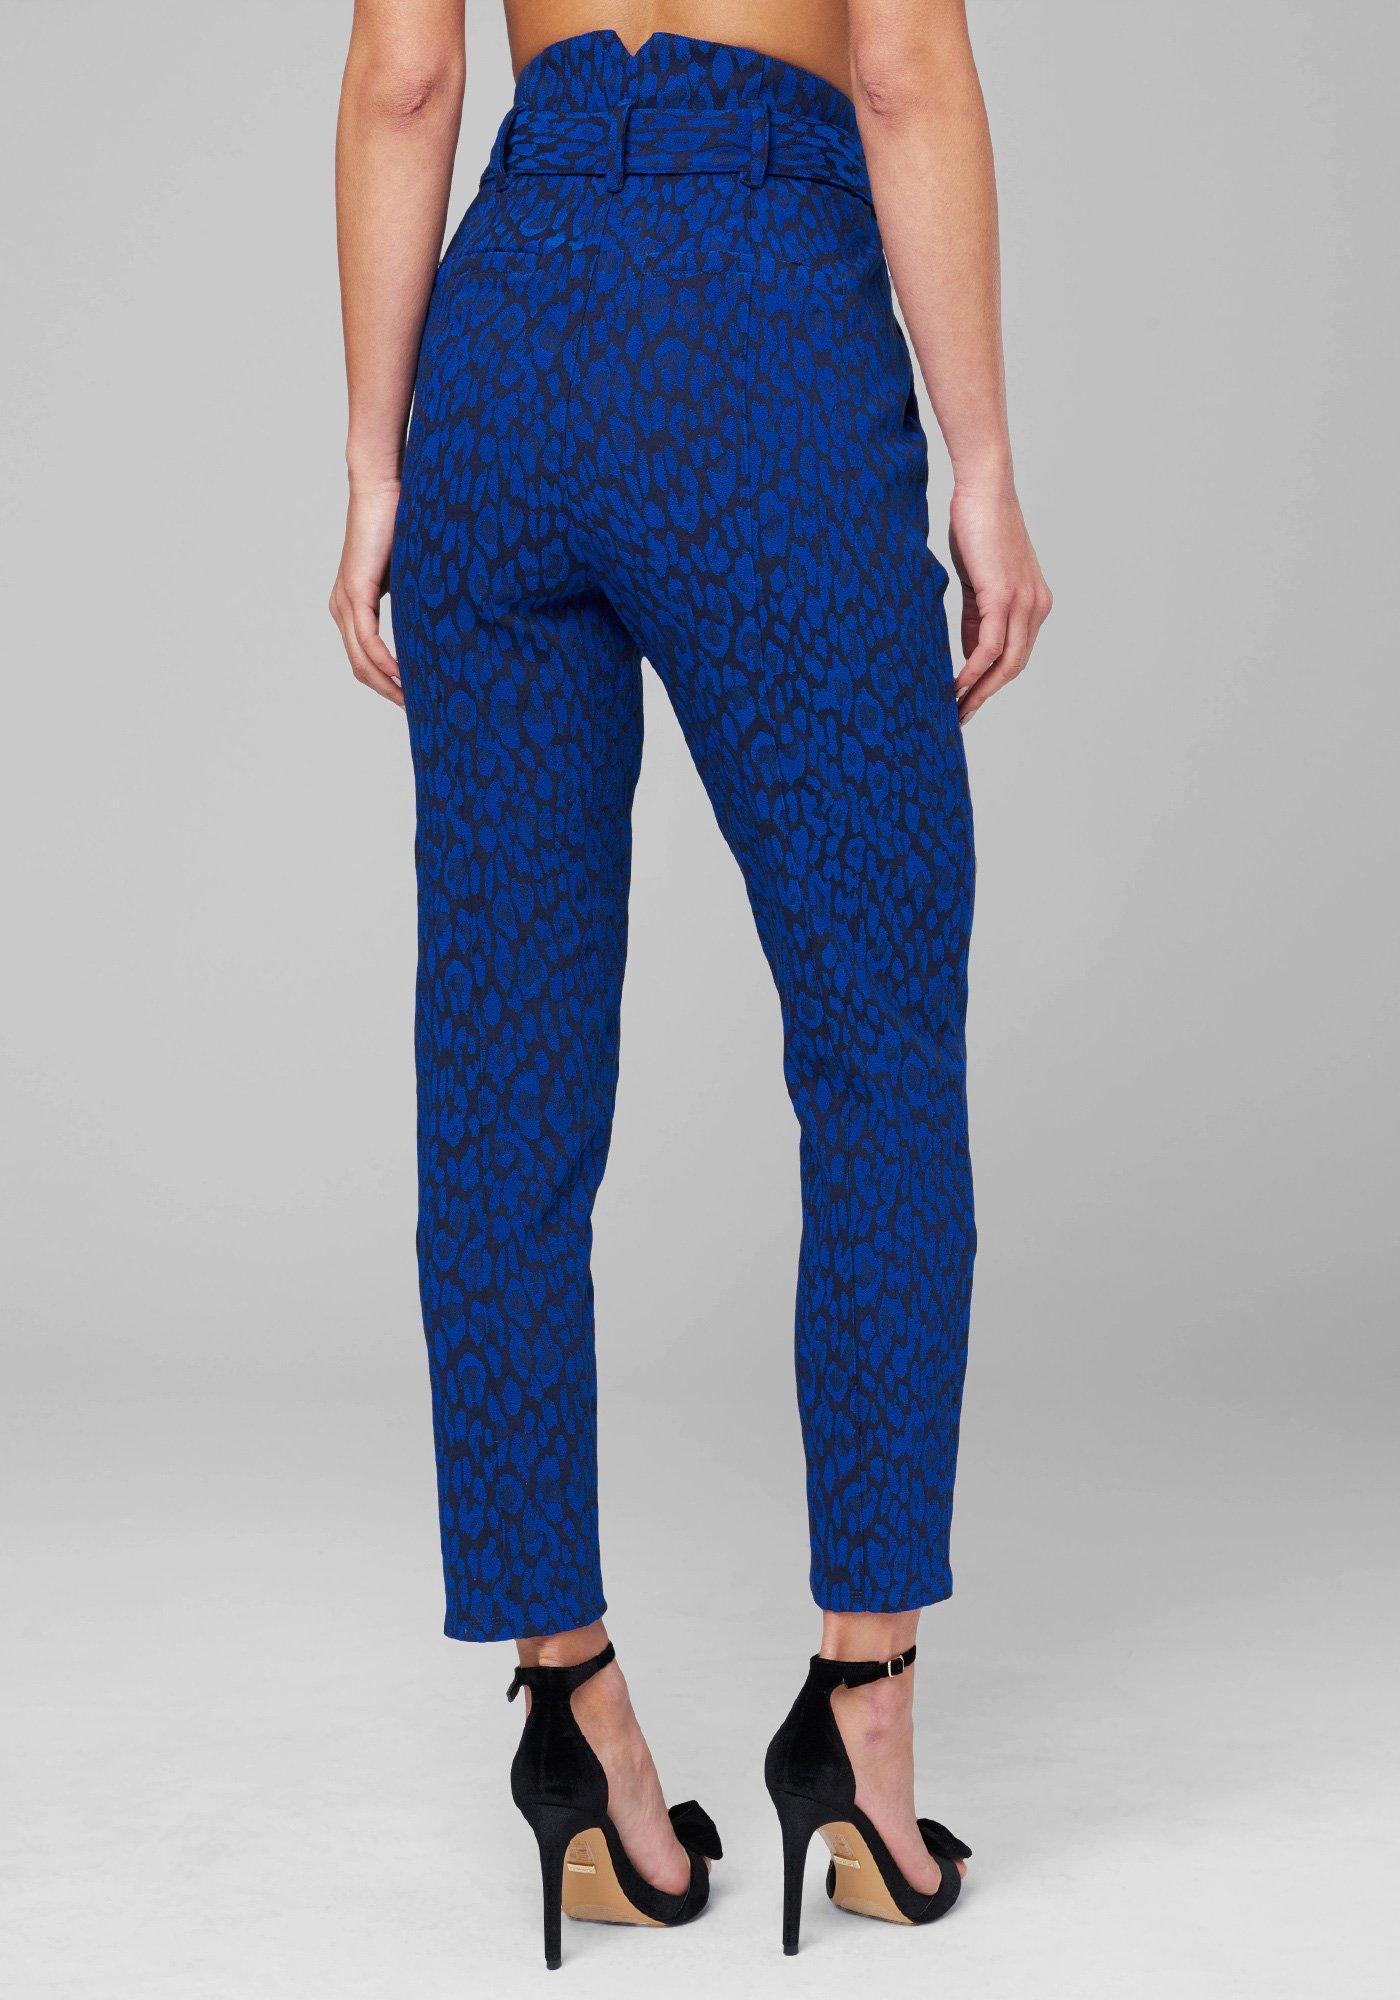 Lyst - Bebe High Waist Leopard Crop Pants in Blue